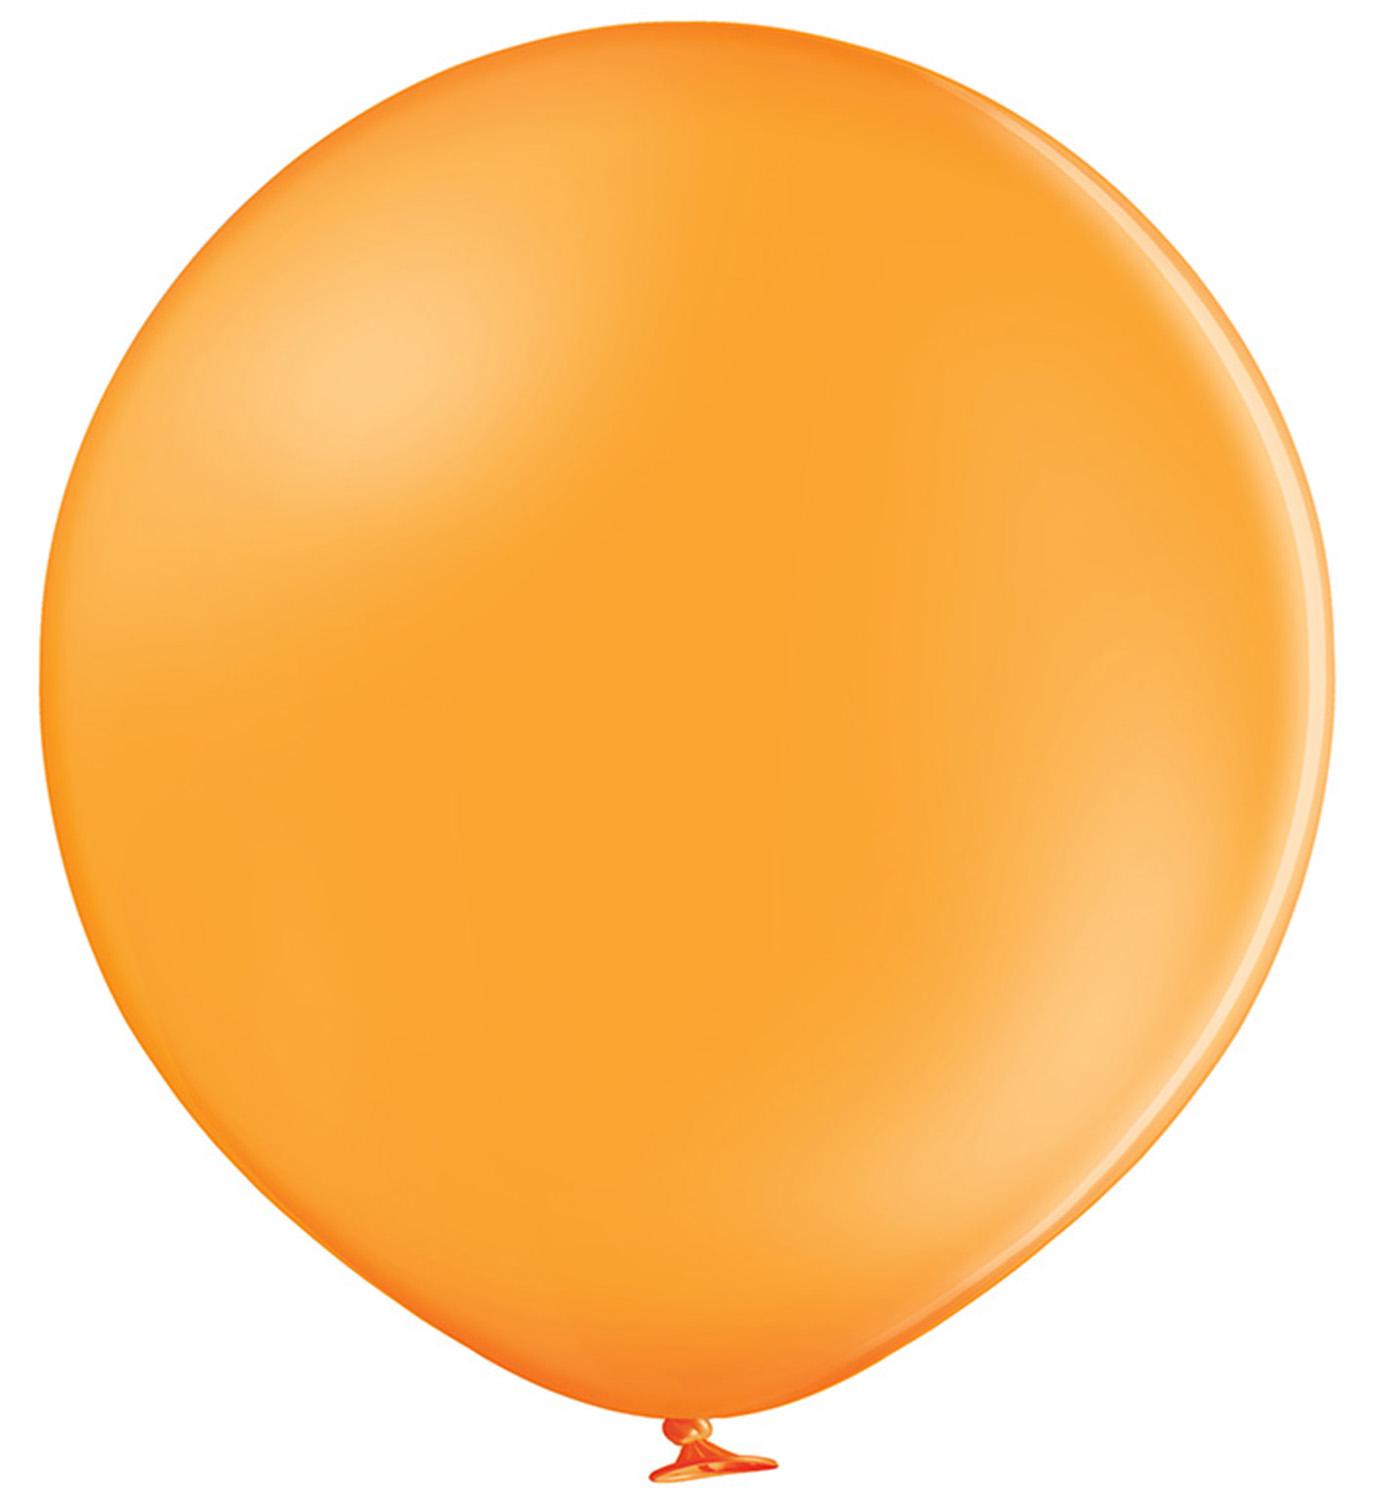 24" (60 cm) Pastel Orange